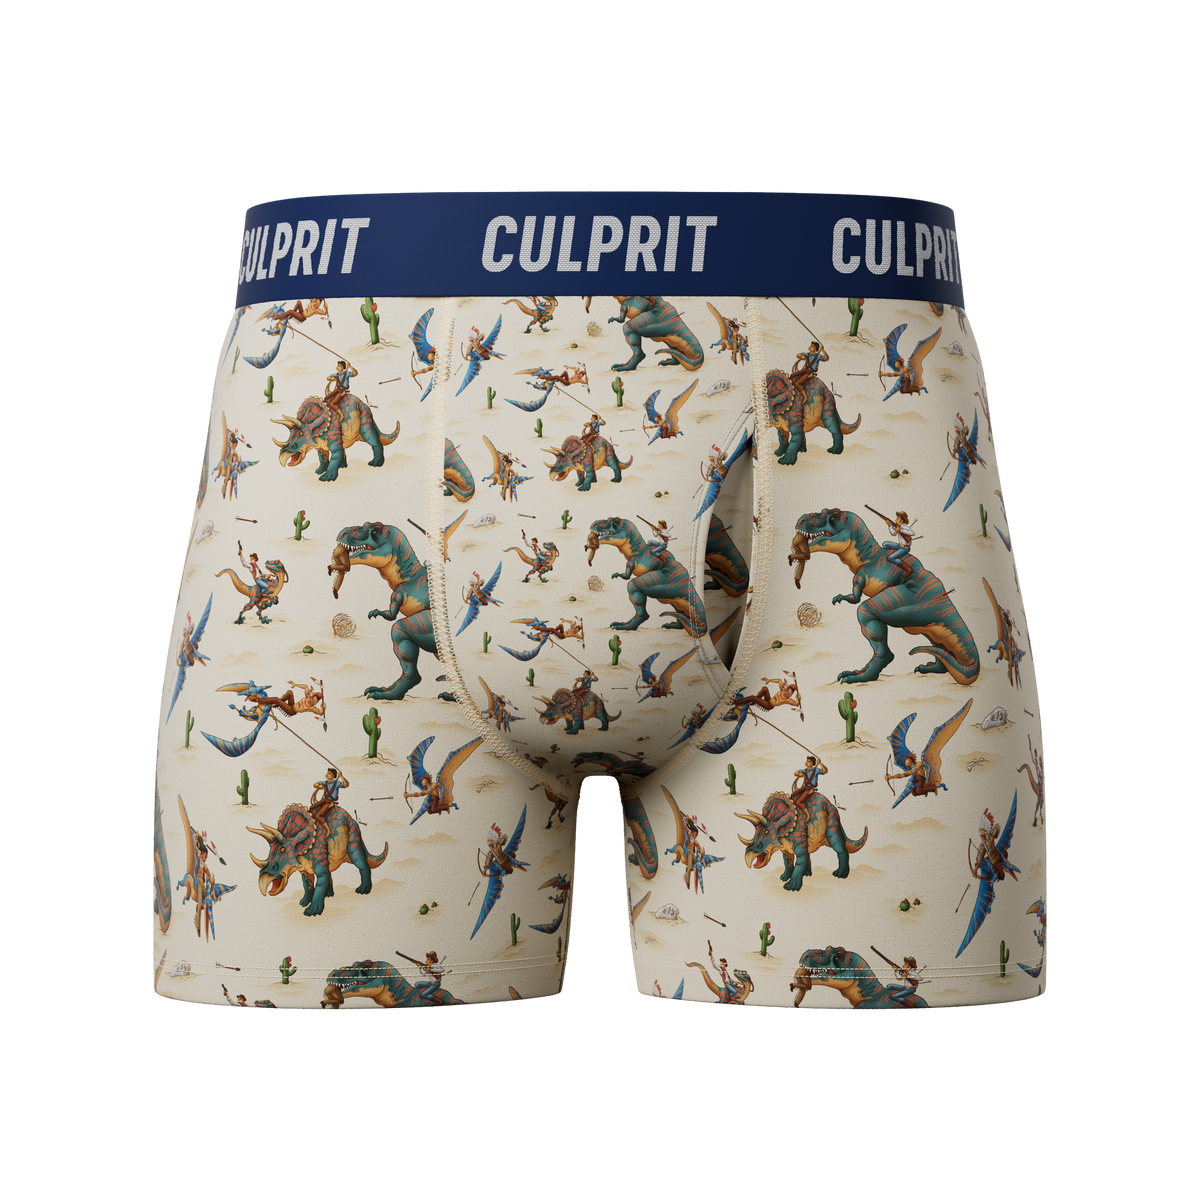 A Very Culprit Christmas – Culprit Underwear